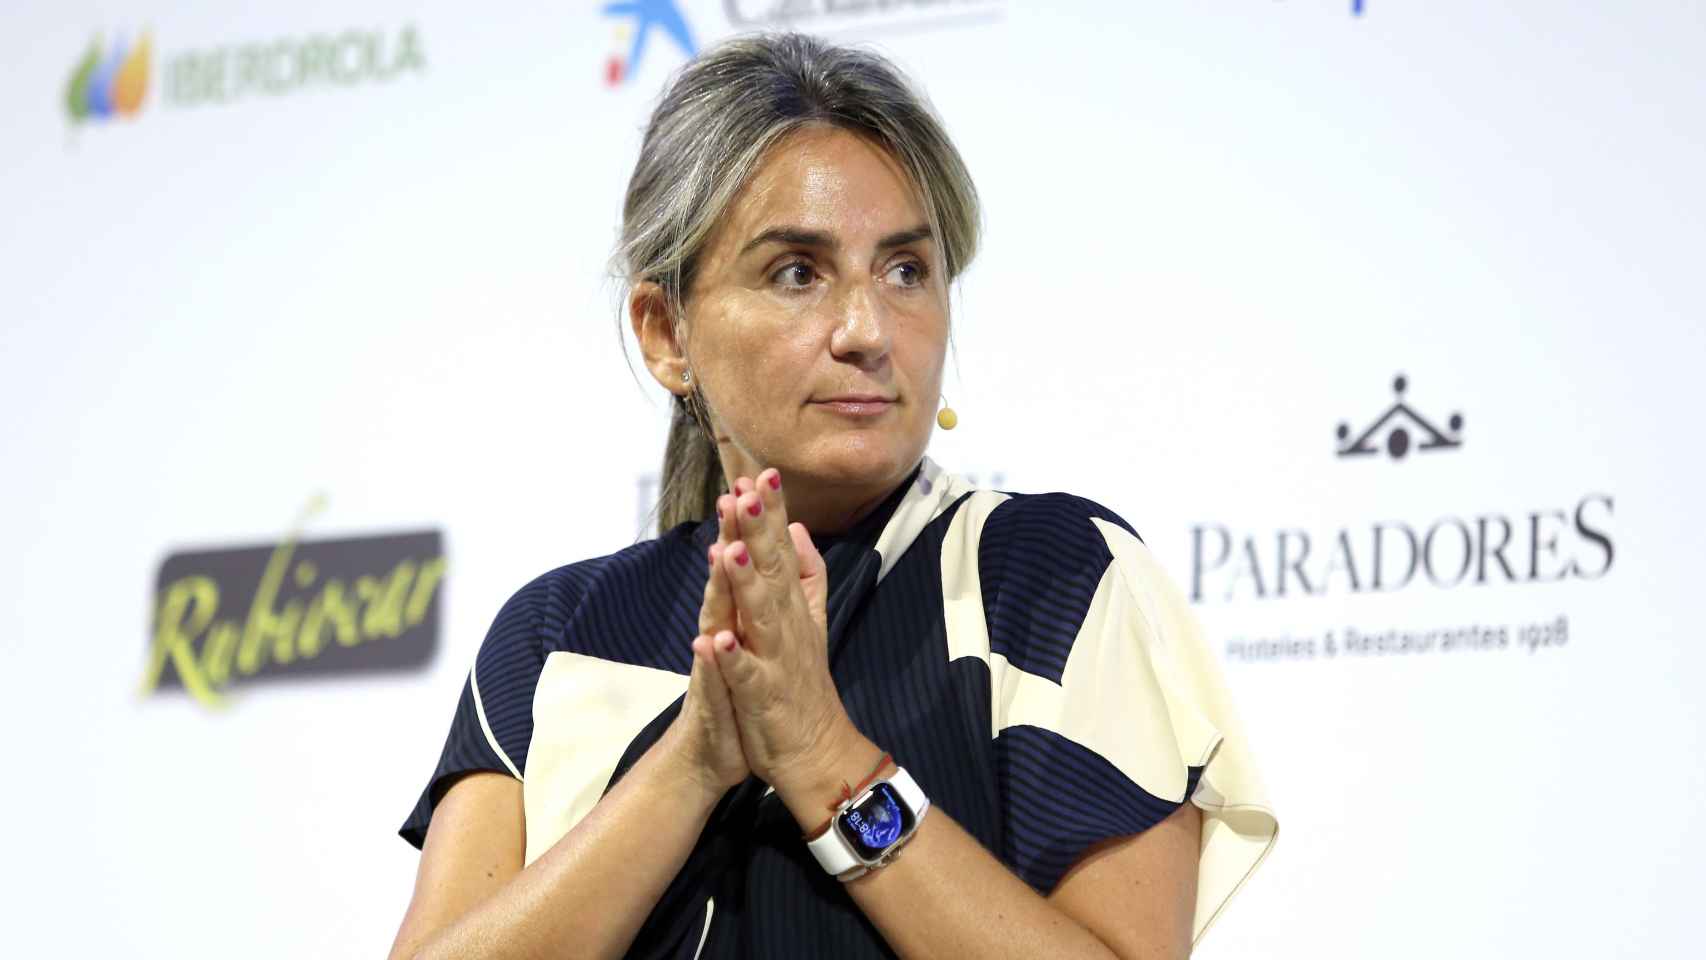 La alcaldesa de Toledo, Milagros Tolón, en una imagen de este lunes en el Foro de Turismo de El Español El Digital CLM